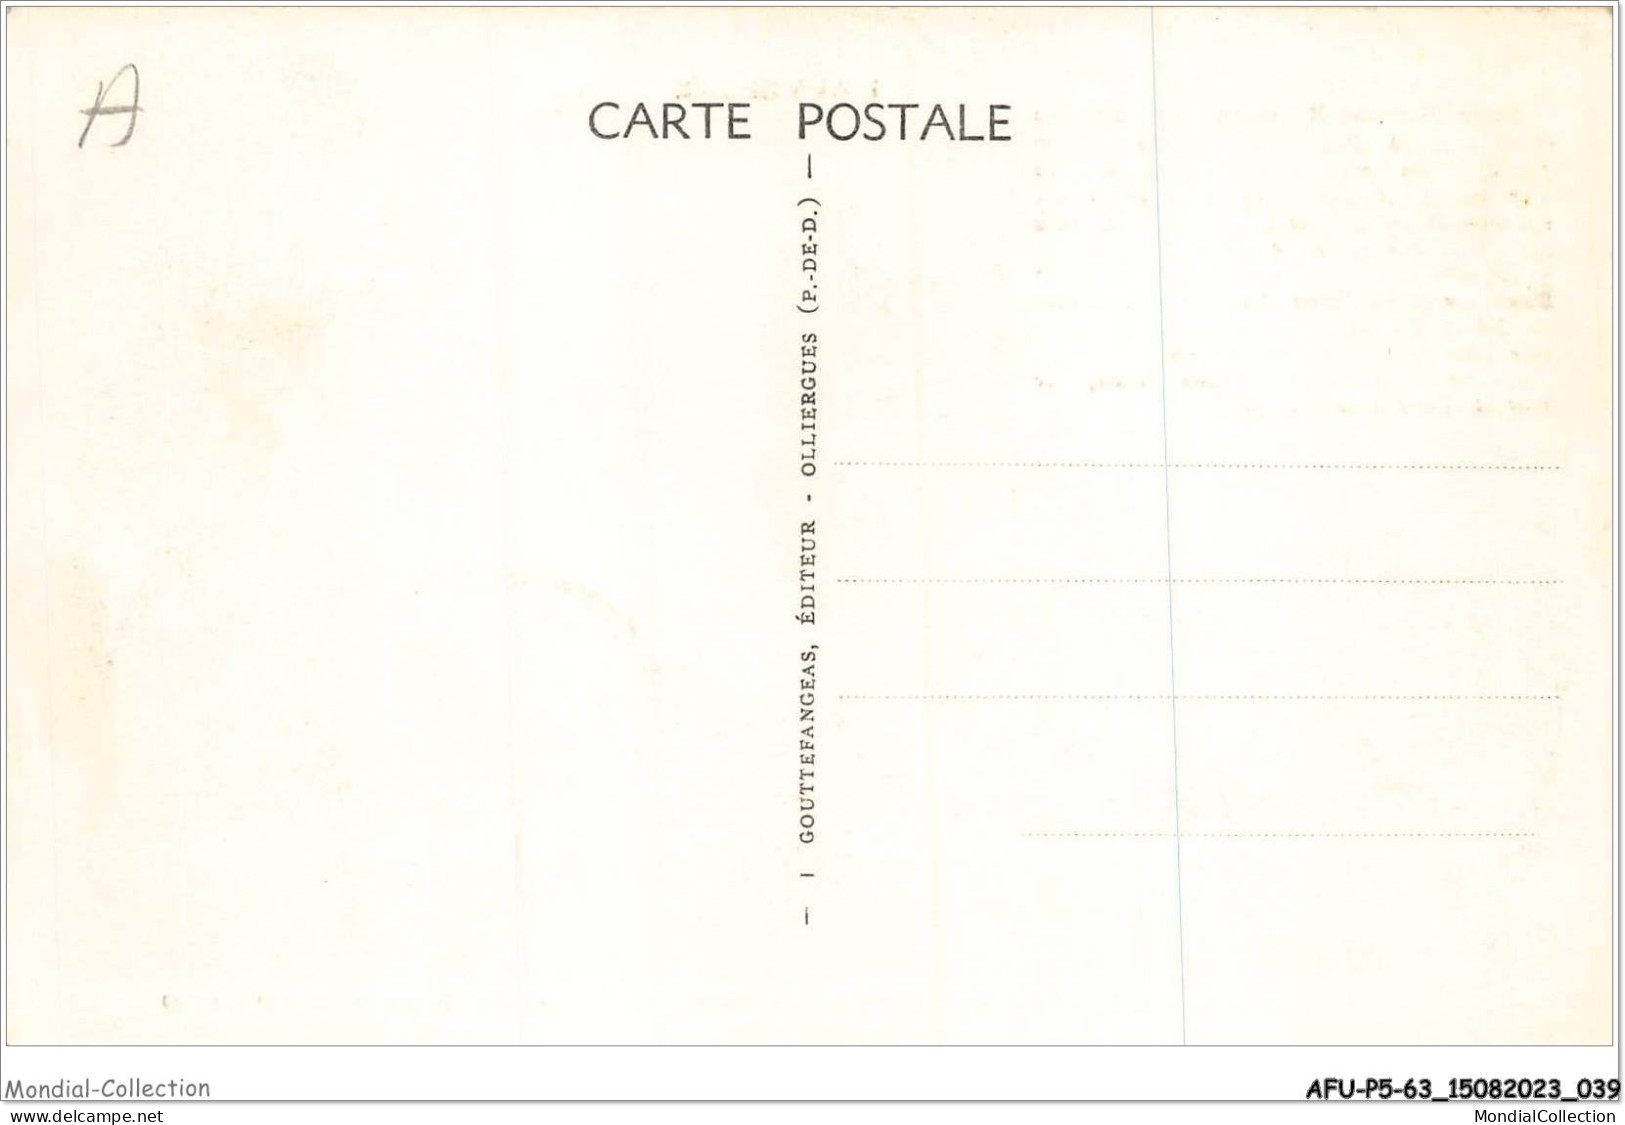 AFUP5-63-0382 - ST-NECTAIRE - L'eglise - Monument Historique - Saint Nectaire